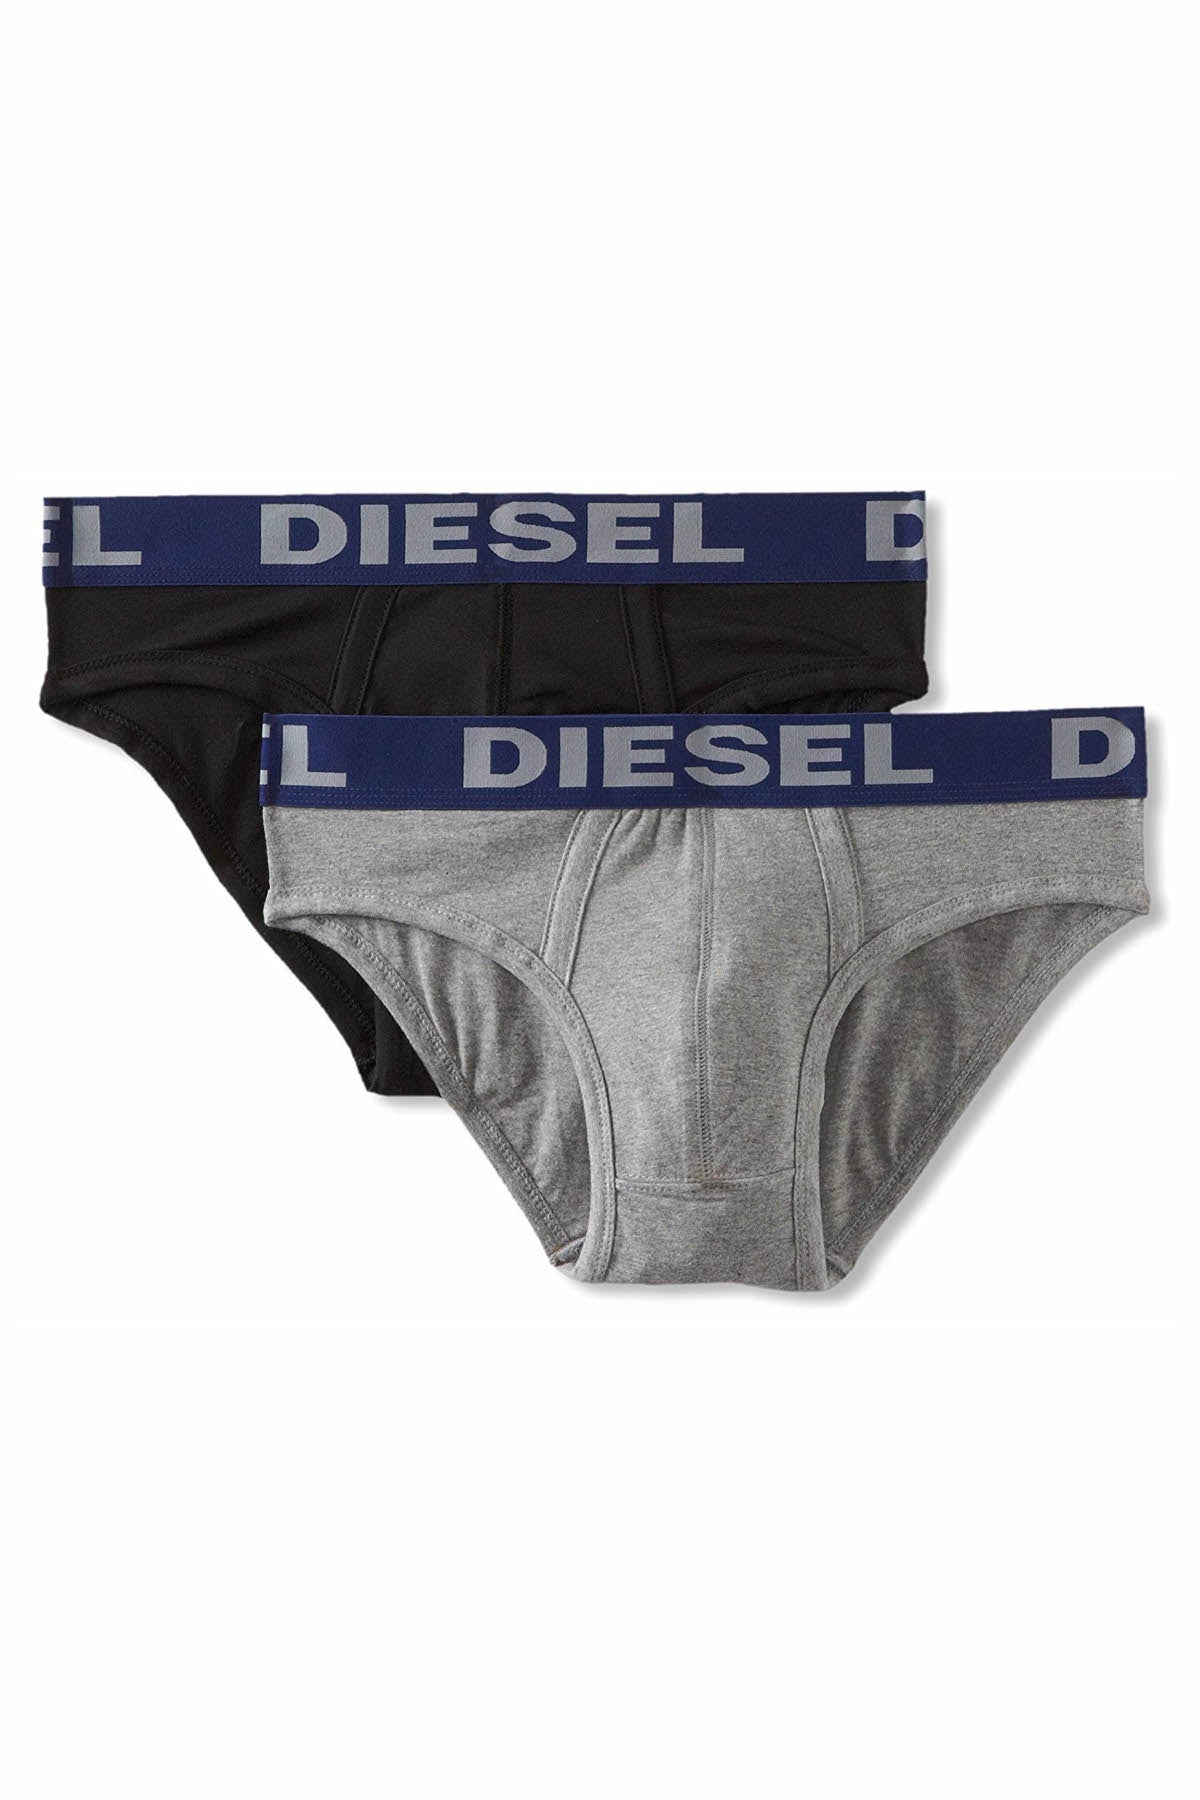 Diesel Black/Grey Andre Brief 2-Pack